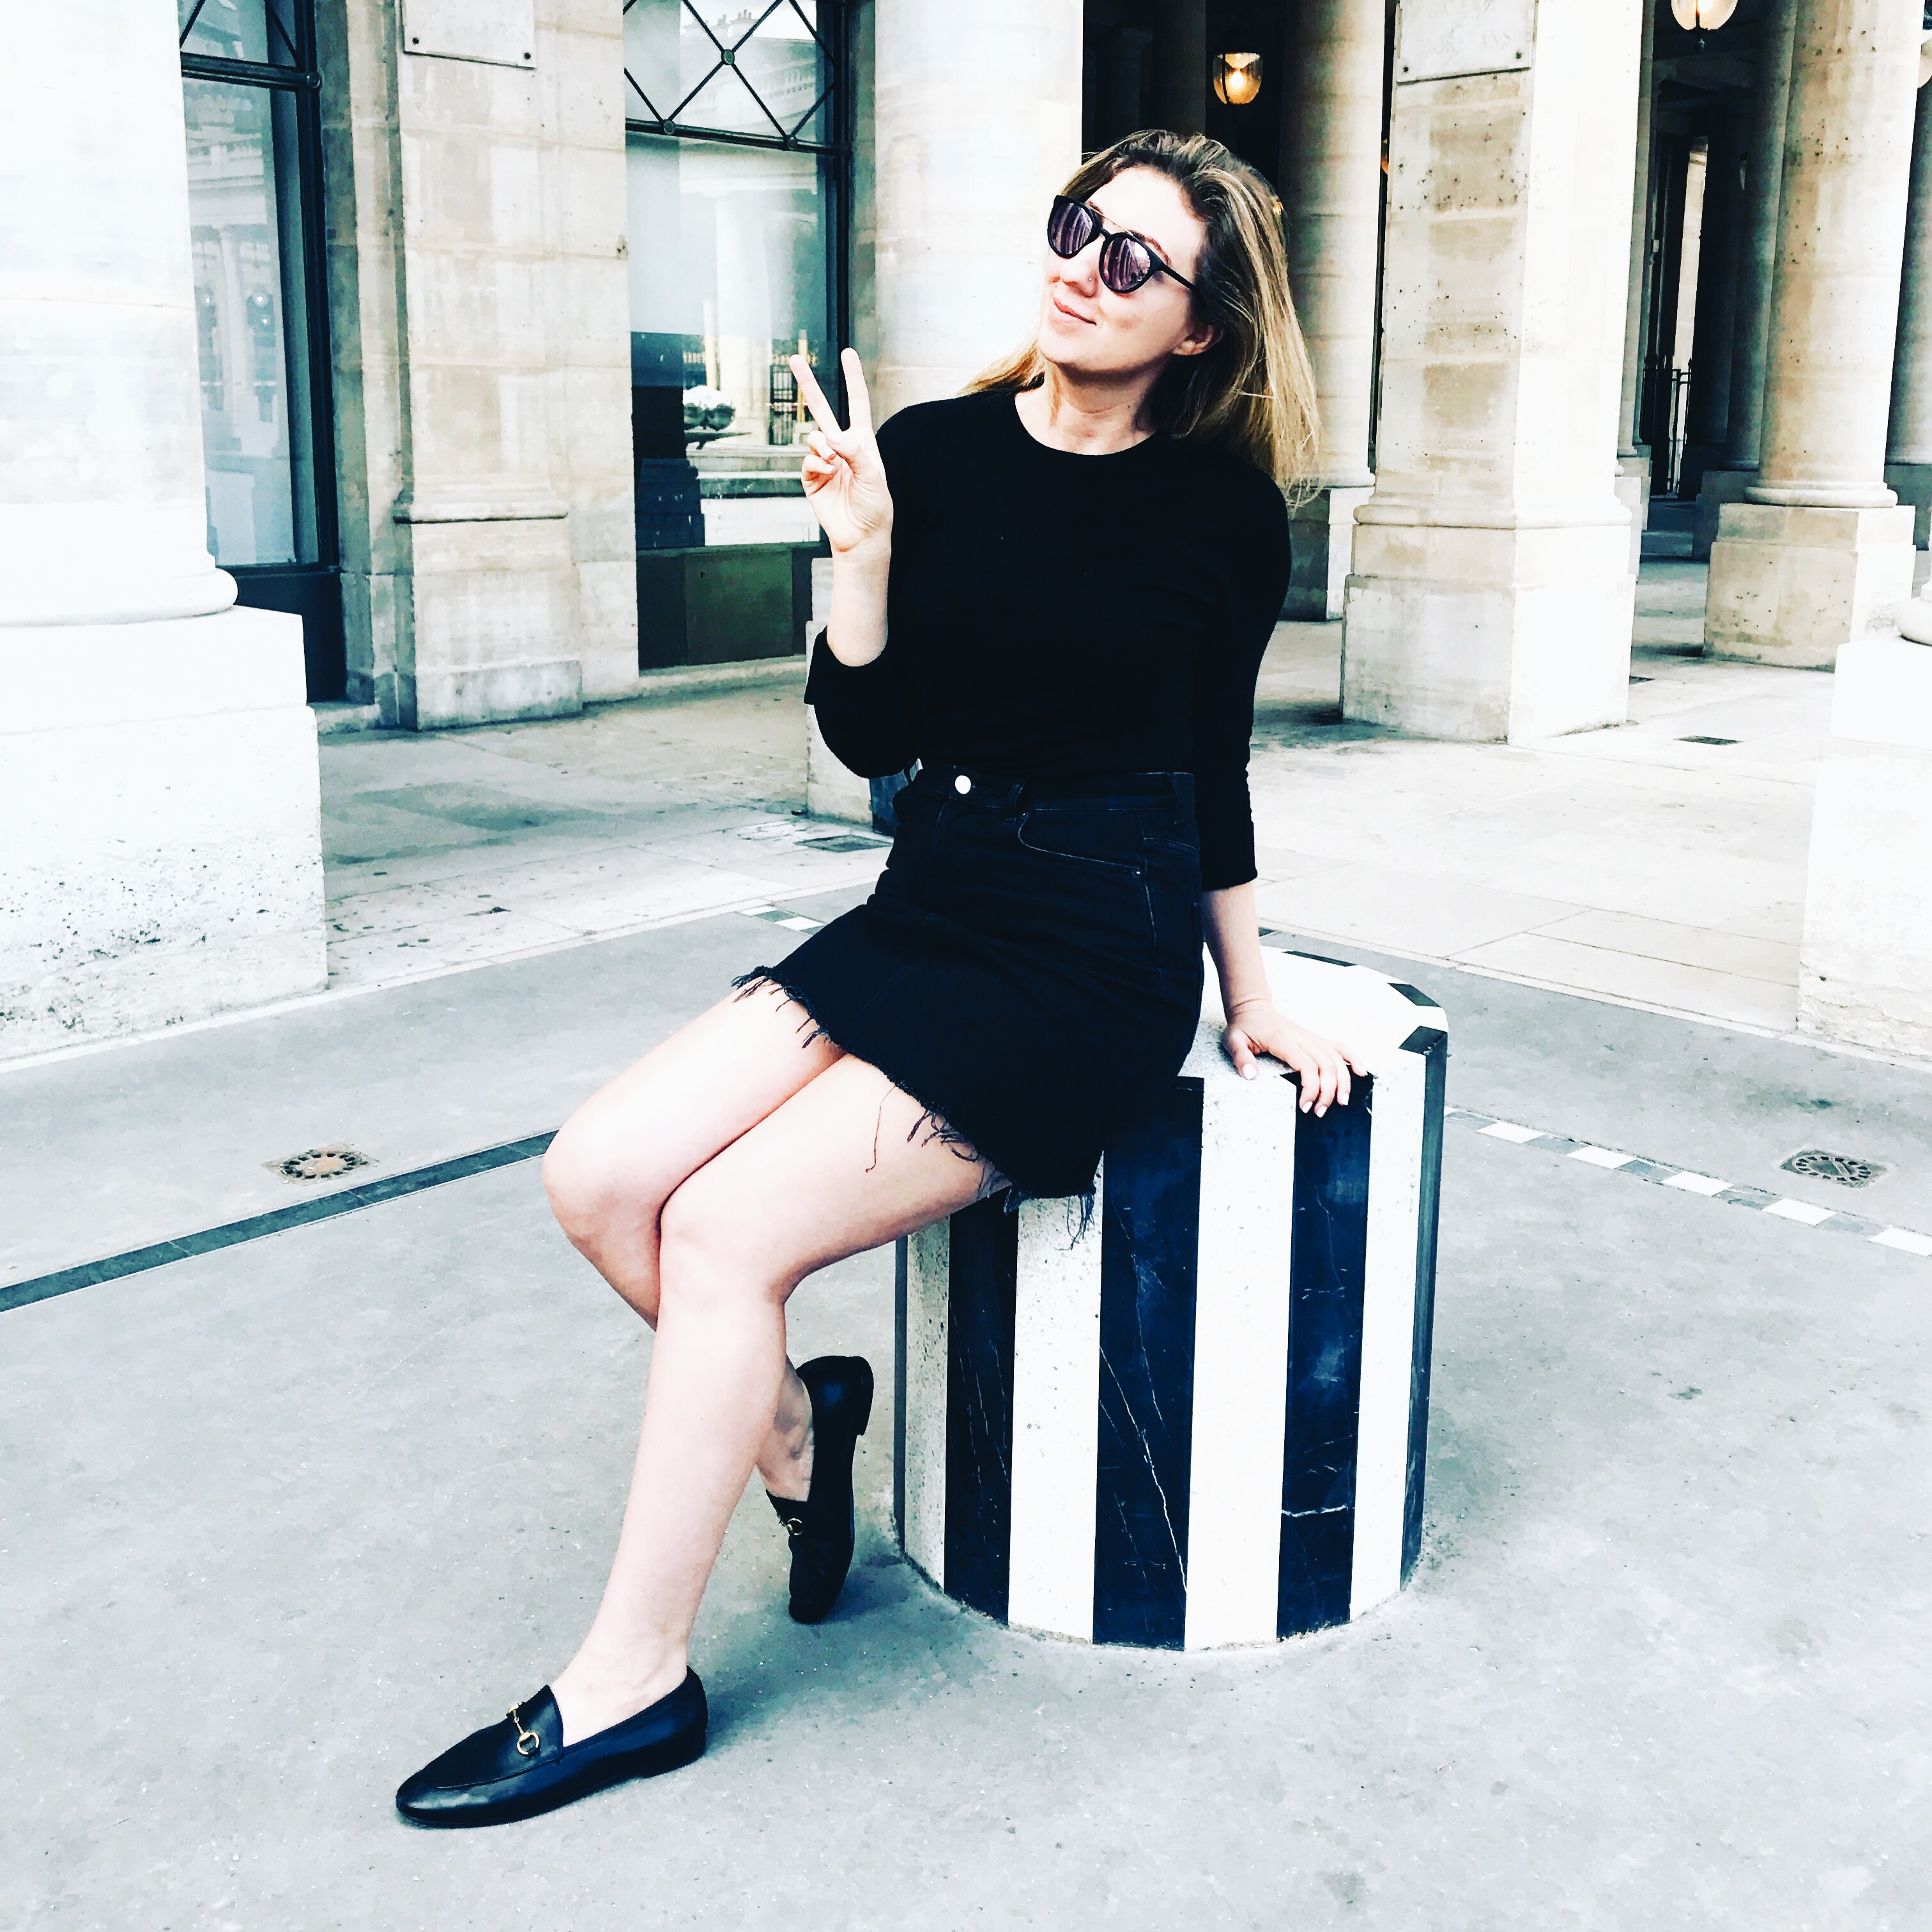 Monica posing in Paris 